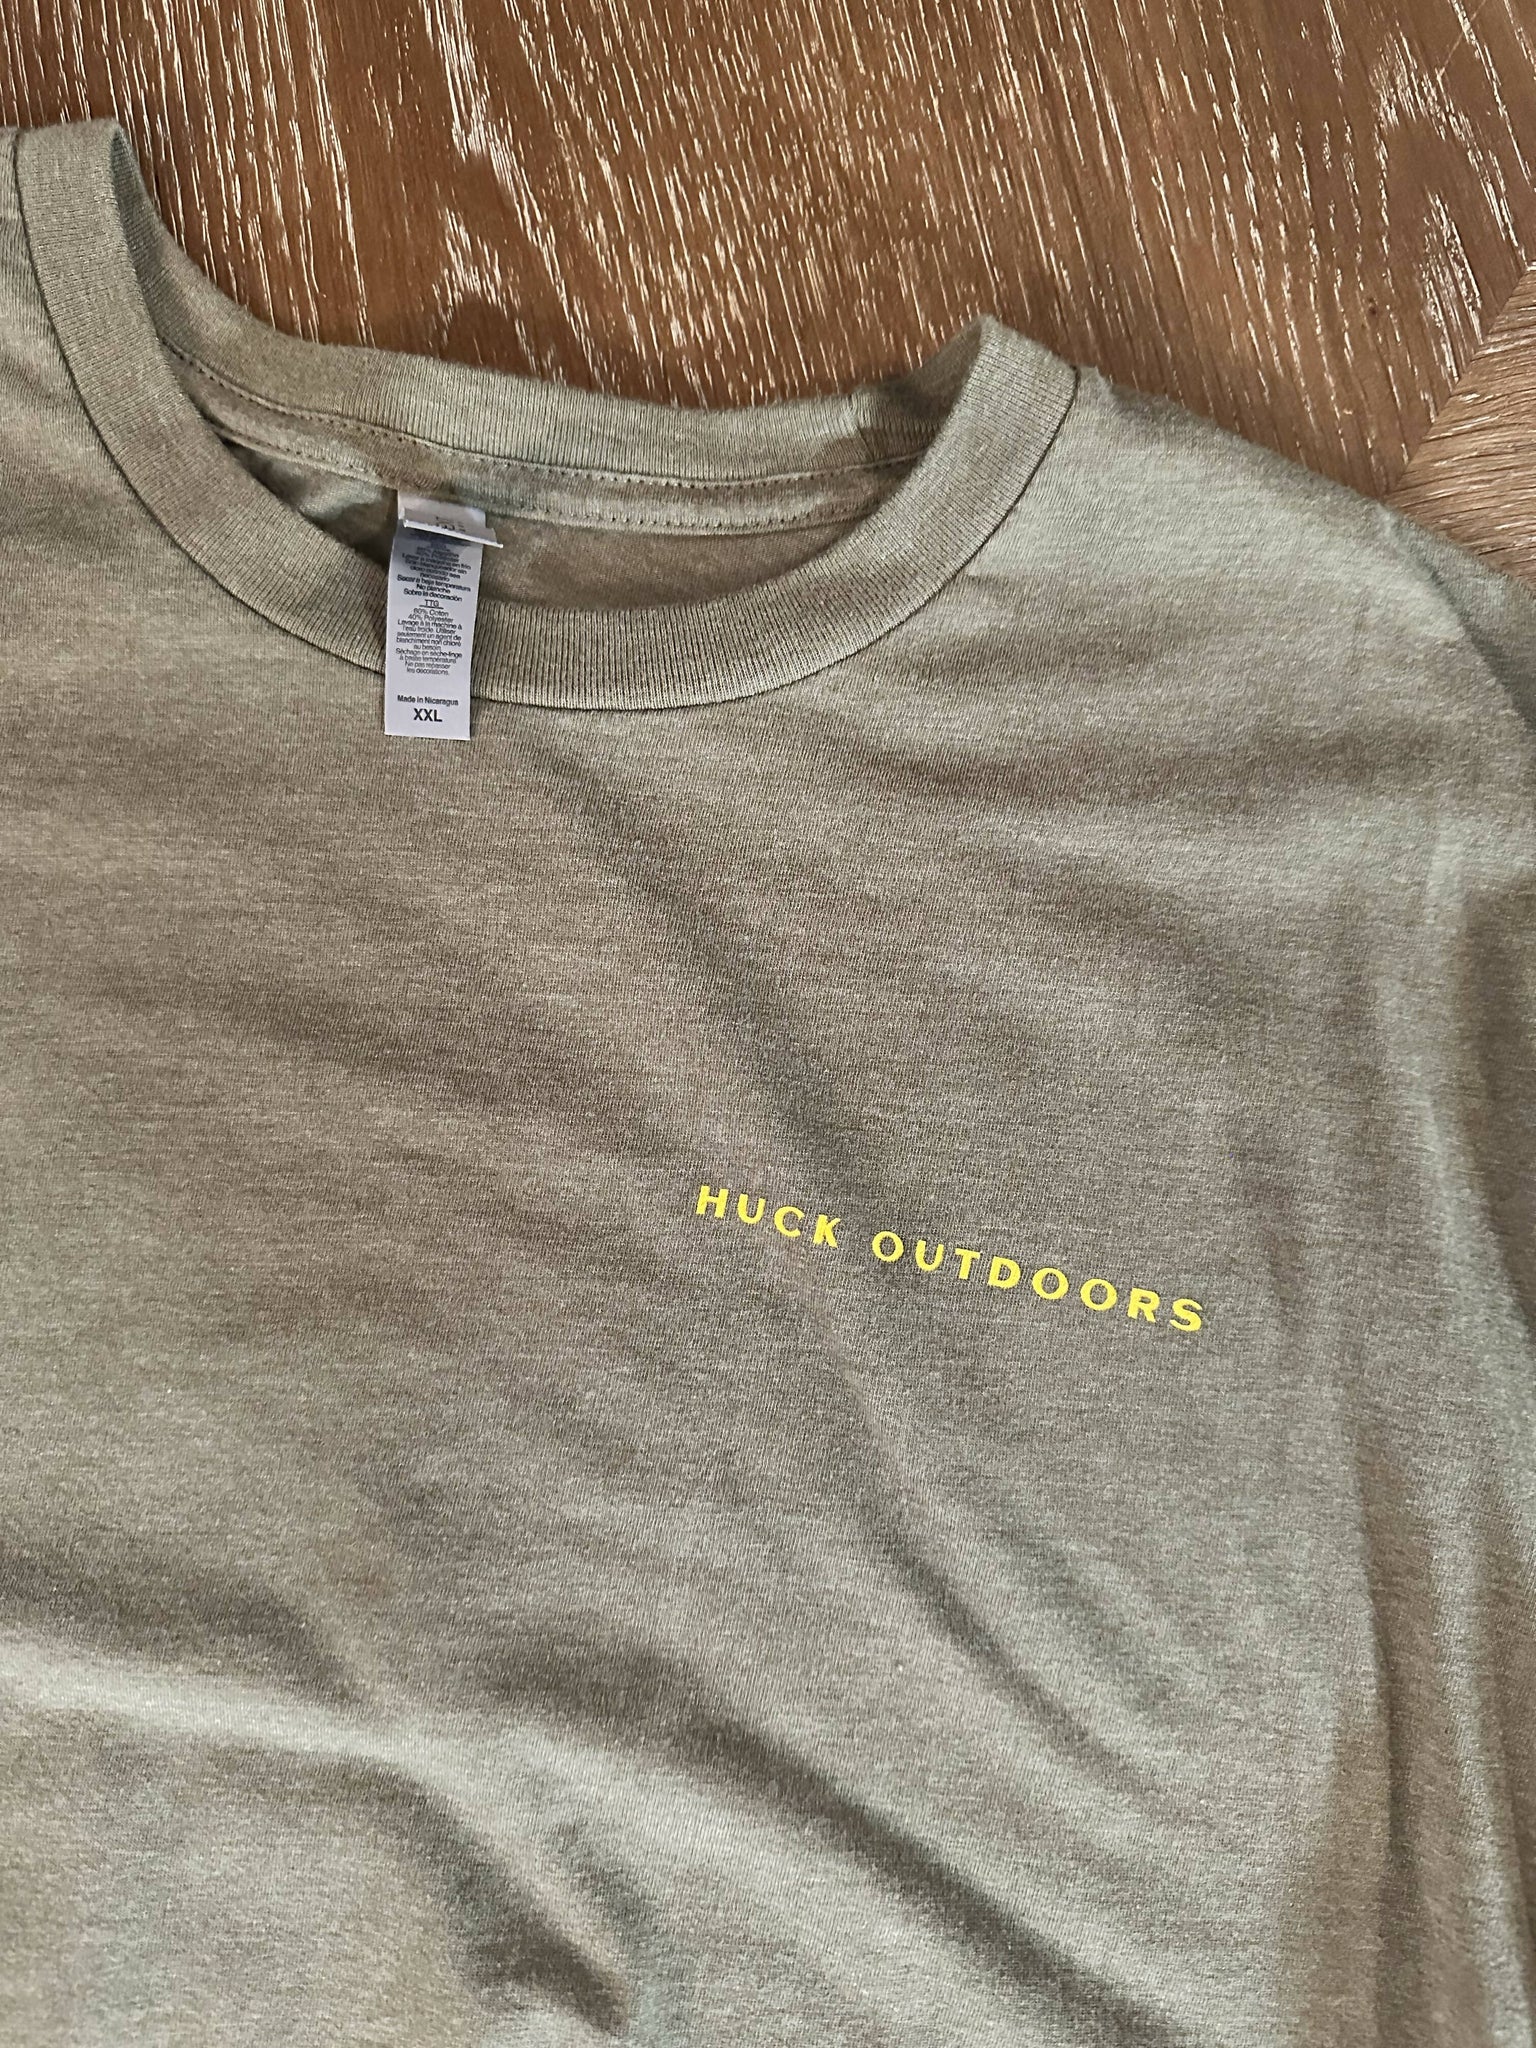 Huck Outdoors Golden Hour Shirt (XXL) – Camoretro